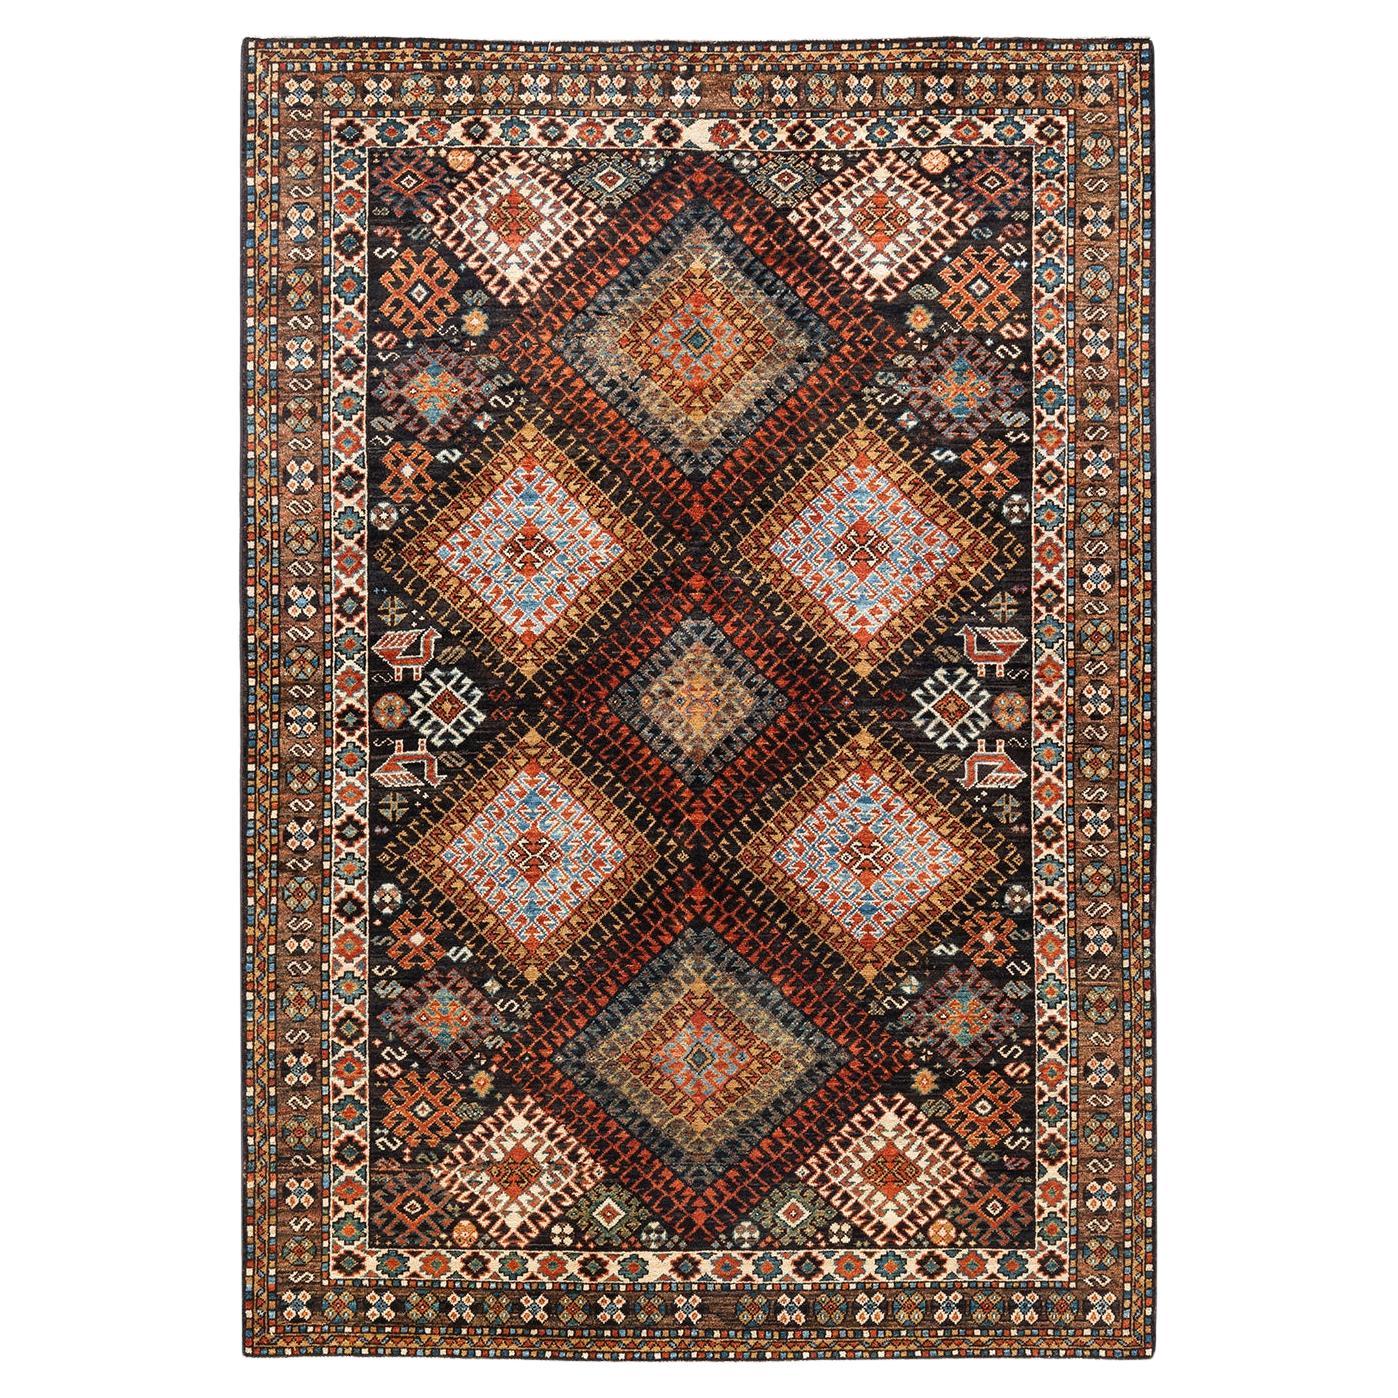 Handgeknüpfter schwarzer Teppich mit böhmischem Stammeskunst-Stammesteppich, Unikat